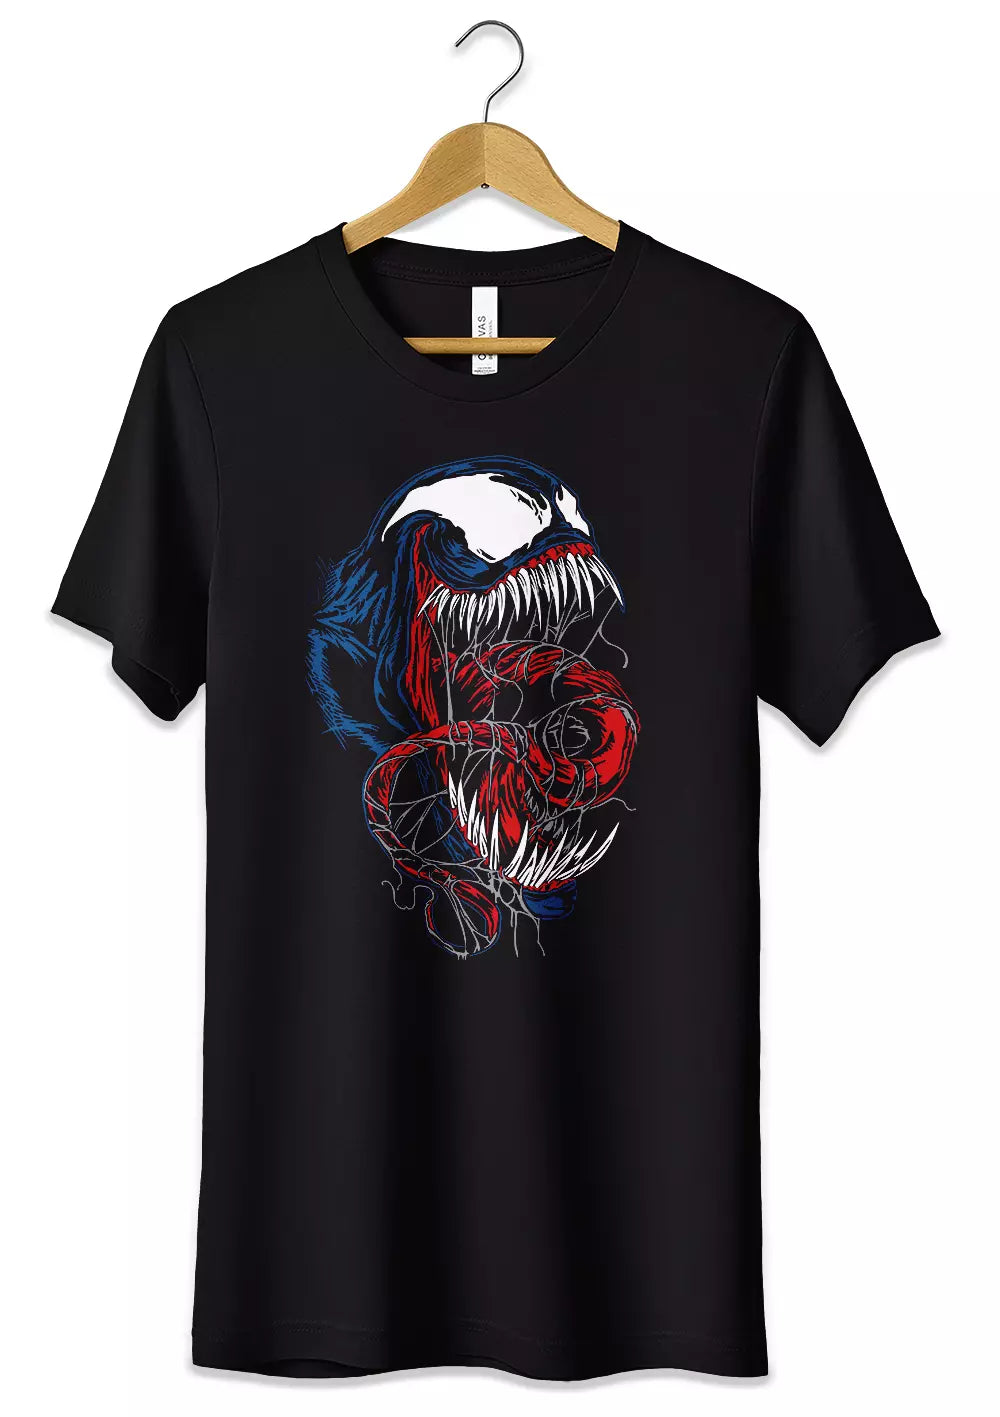 T-Shirt Maglietta Supereroi Venom, CmrDesignStore, T-Shirt, t-shirt-maglietta-supereroi-venom, CmrDesignStore